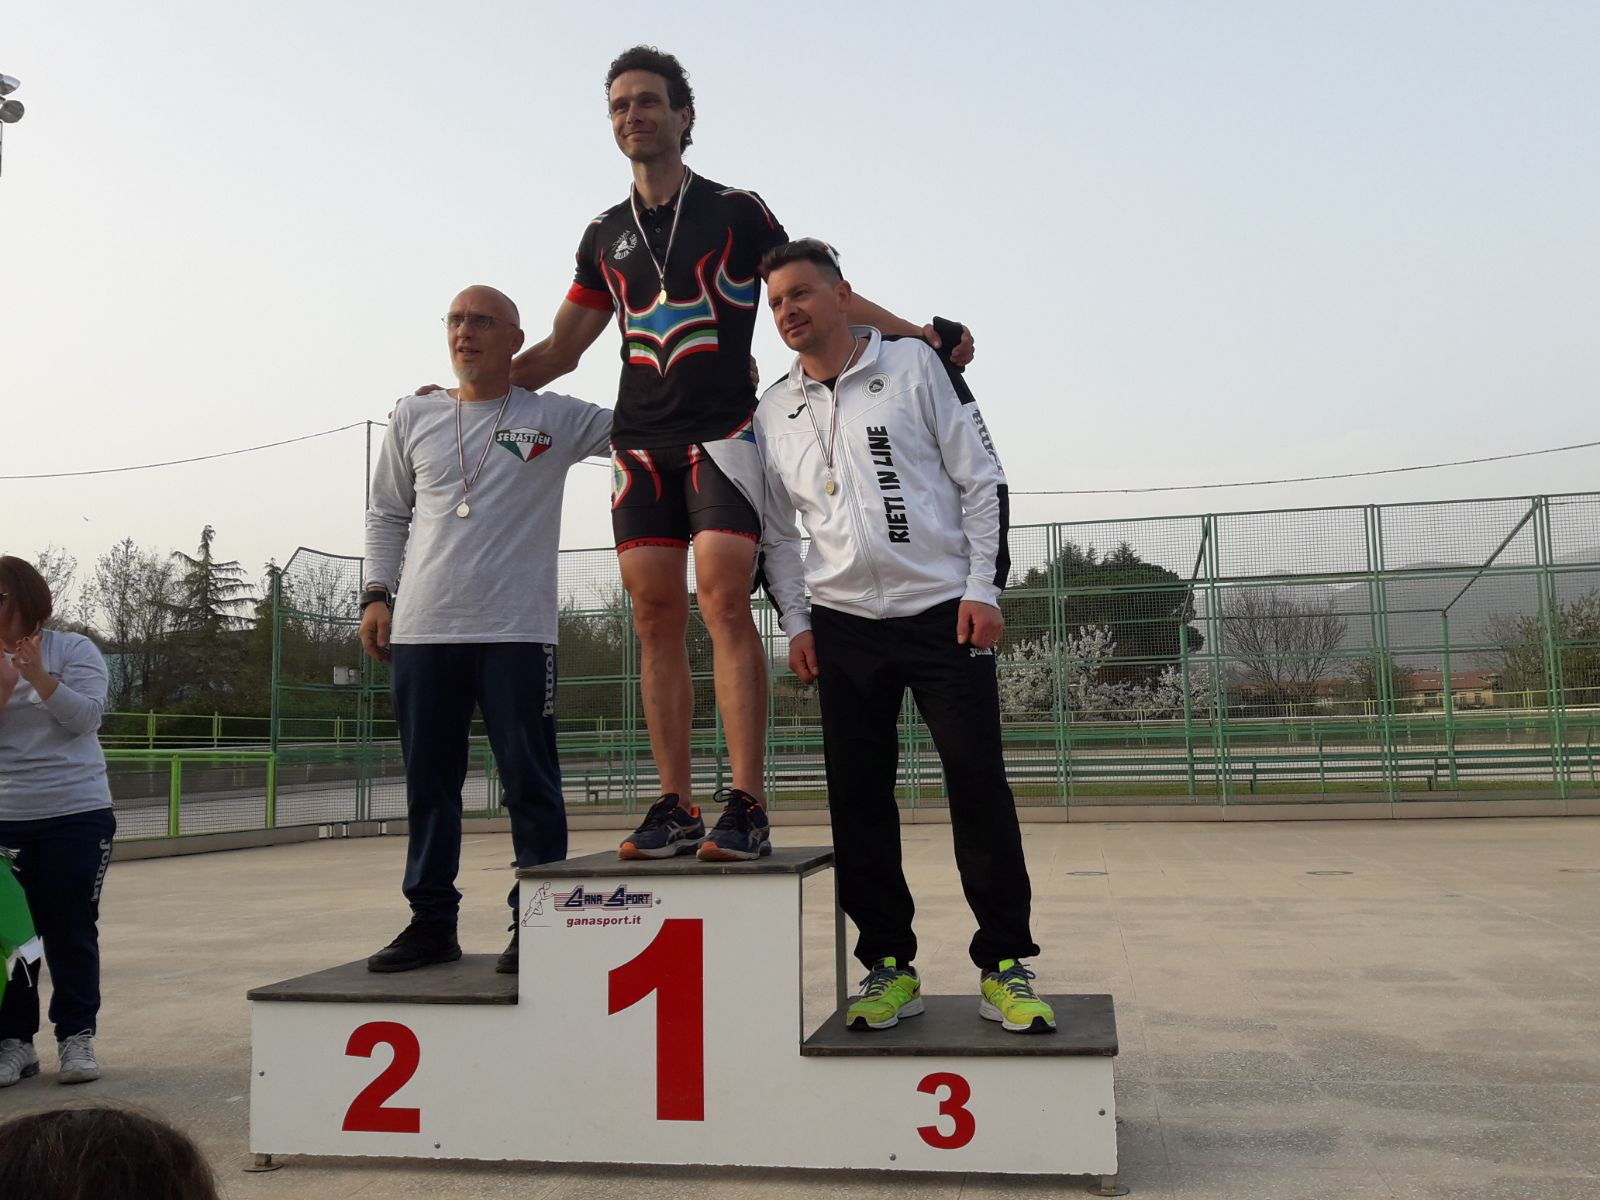 Campionati Regionali 2018 pista podio damiano